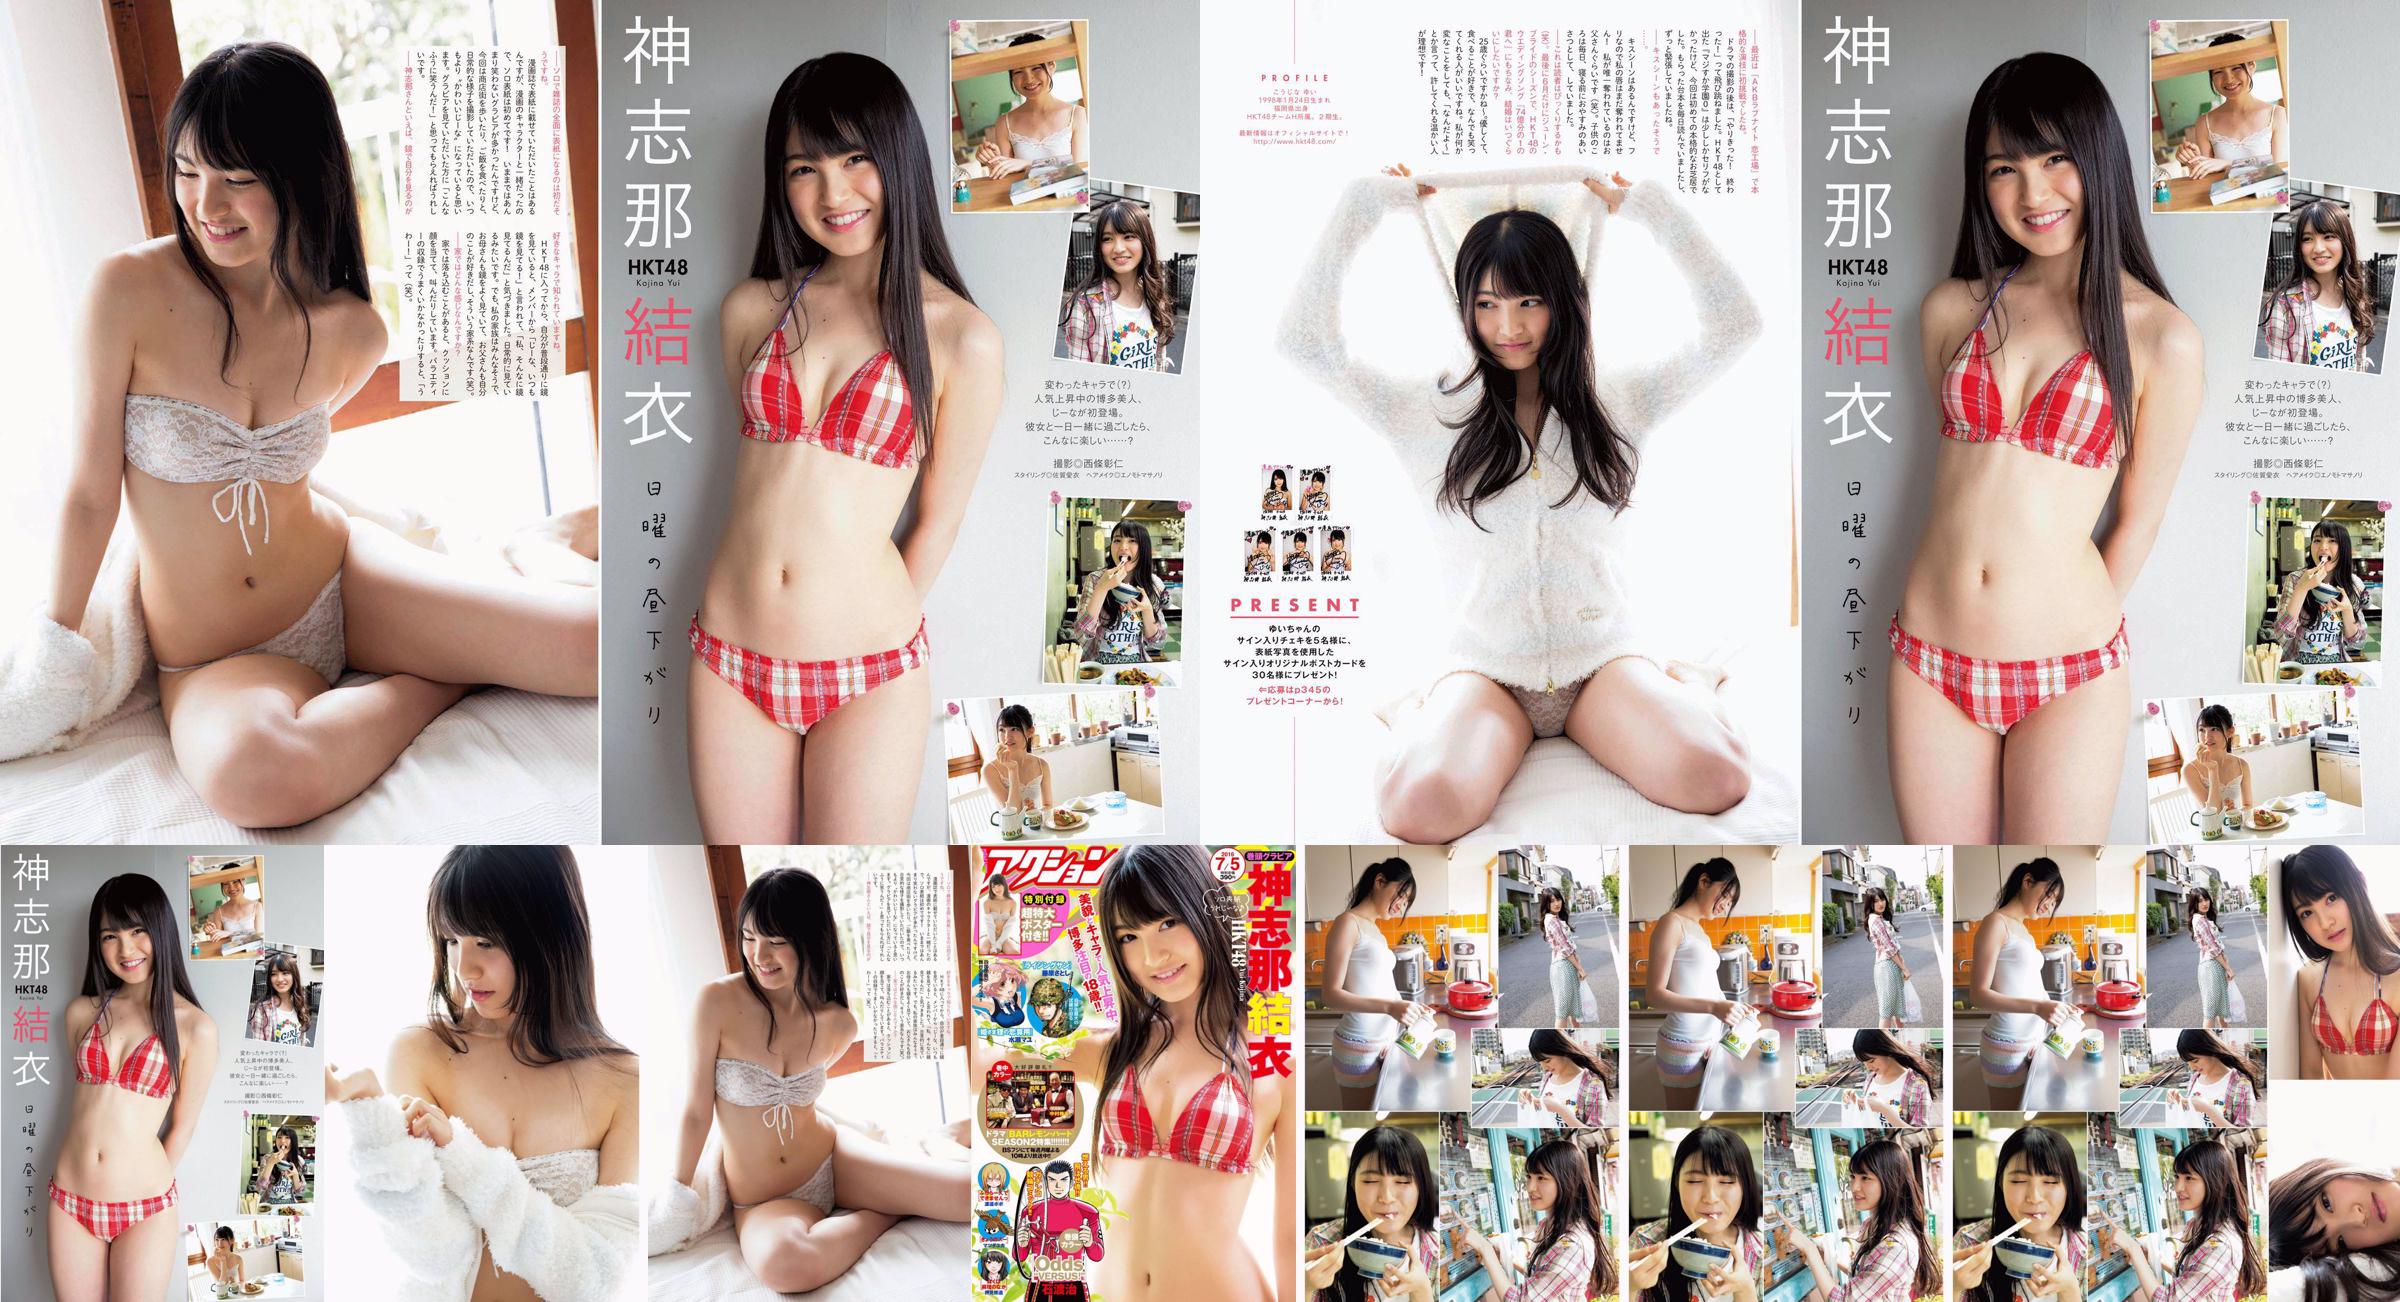 [Manga Action] Shinshina Yui 2016 No.13 Photo Magazine No.5efdb3 หน้า 1